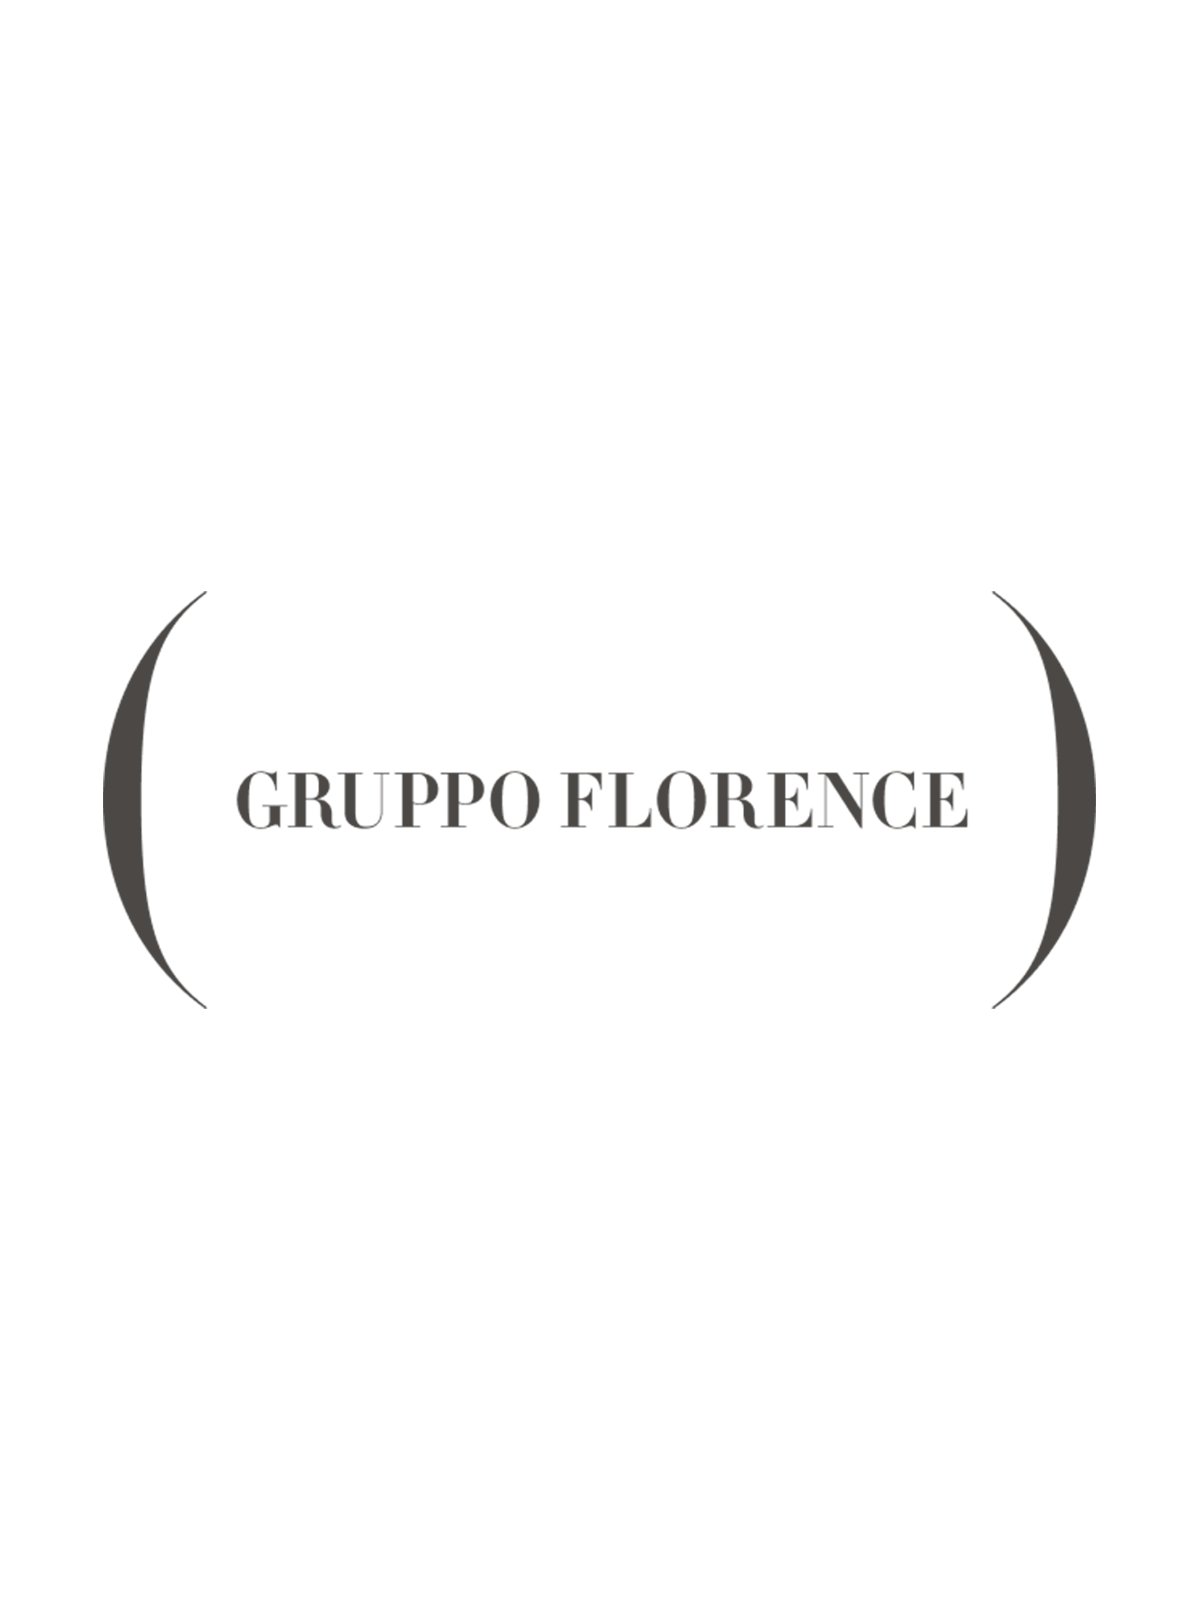 Gruppo Florence inaugura la business unit “Leather Goods” con le toscane Effebi S.r.l e A.L.B.A. S.r.l., eccellenze del Made in Italy 